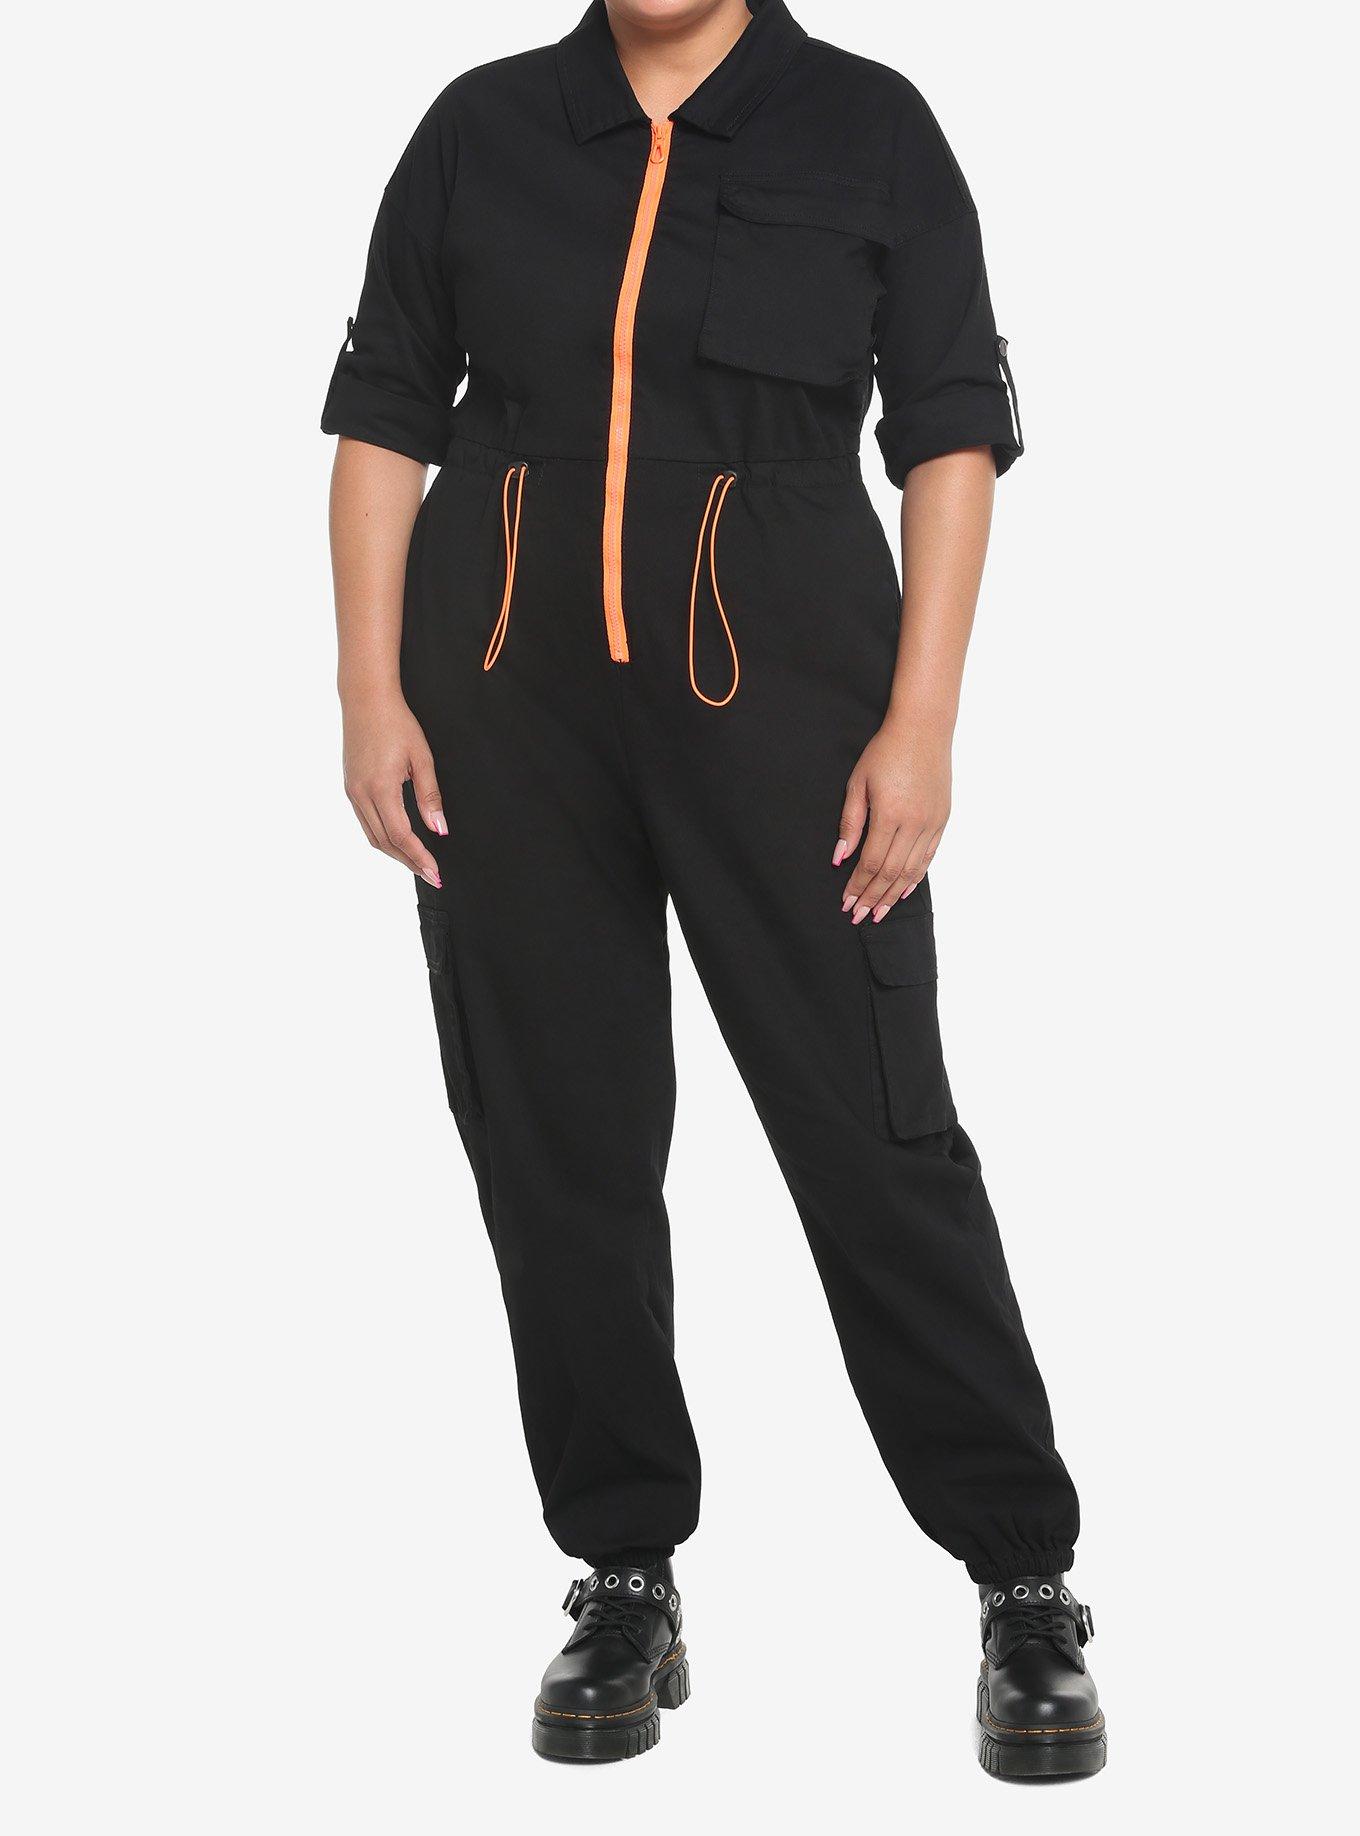 Black & Orange Jogger Jumpsuit Plus Size, BLACK, hi-res